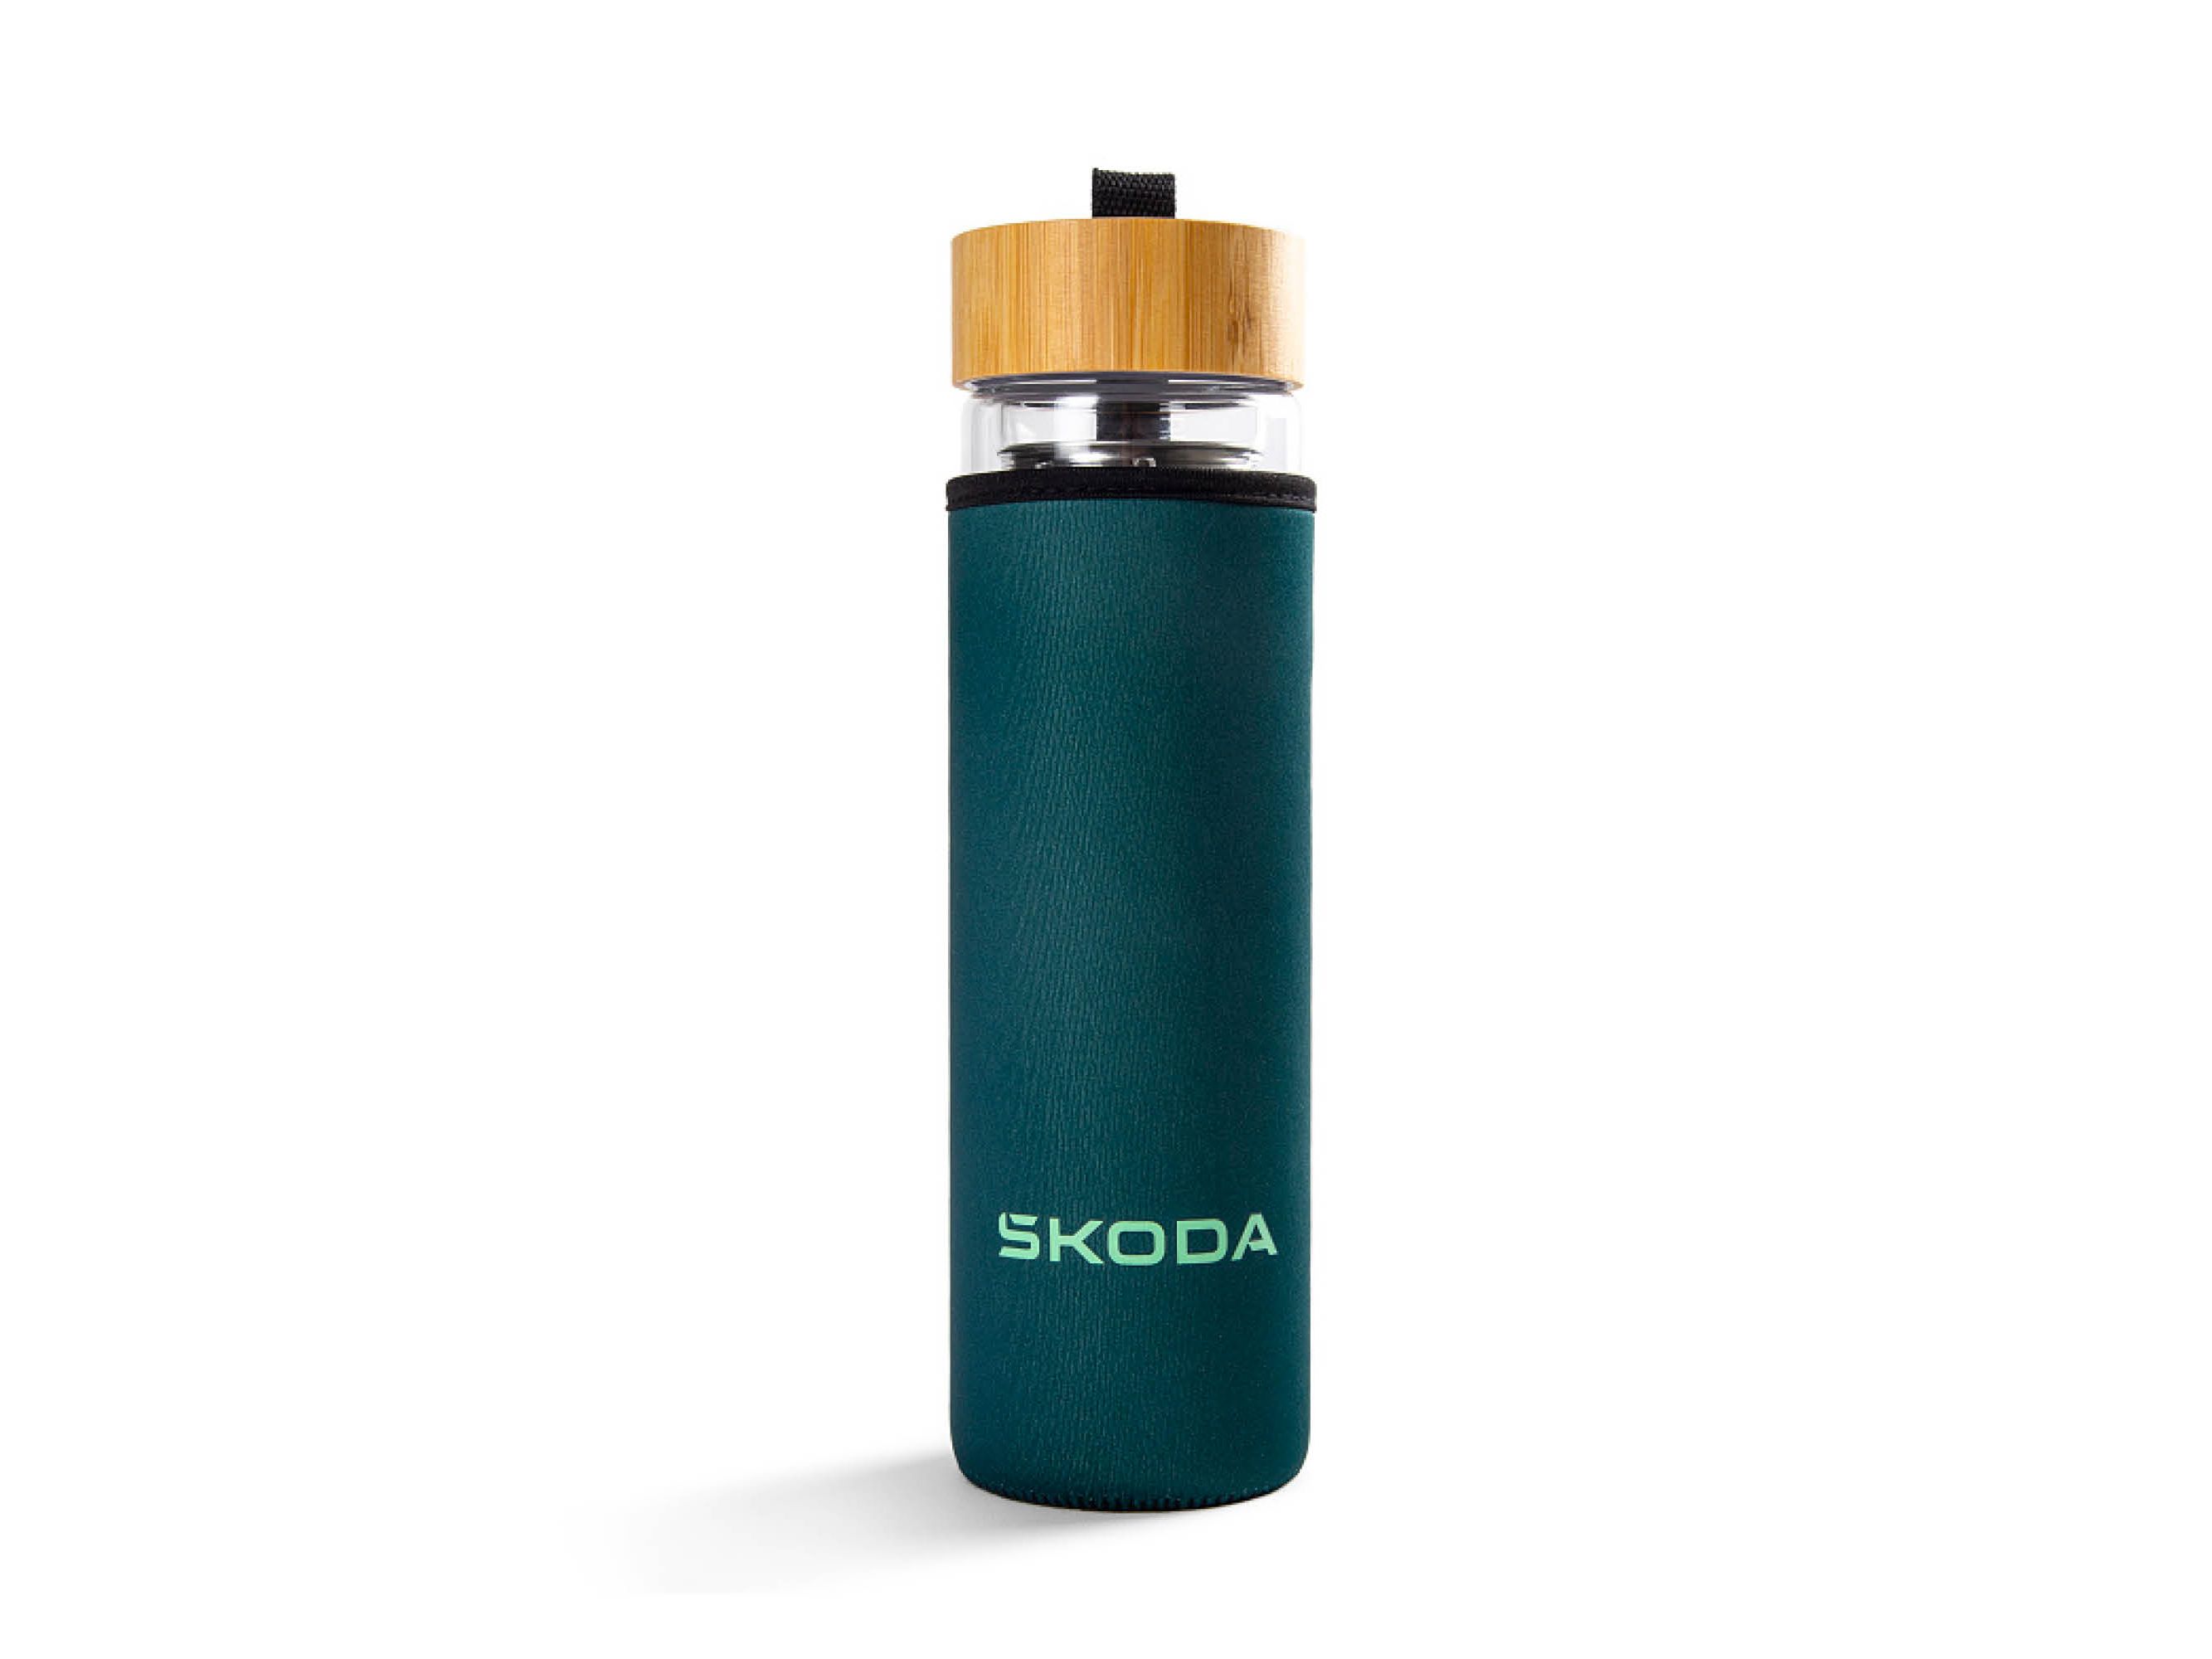 Škoda Glasflasche in grün mit Holzverschluss und Škoda Schriftzug